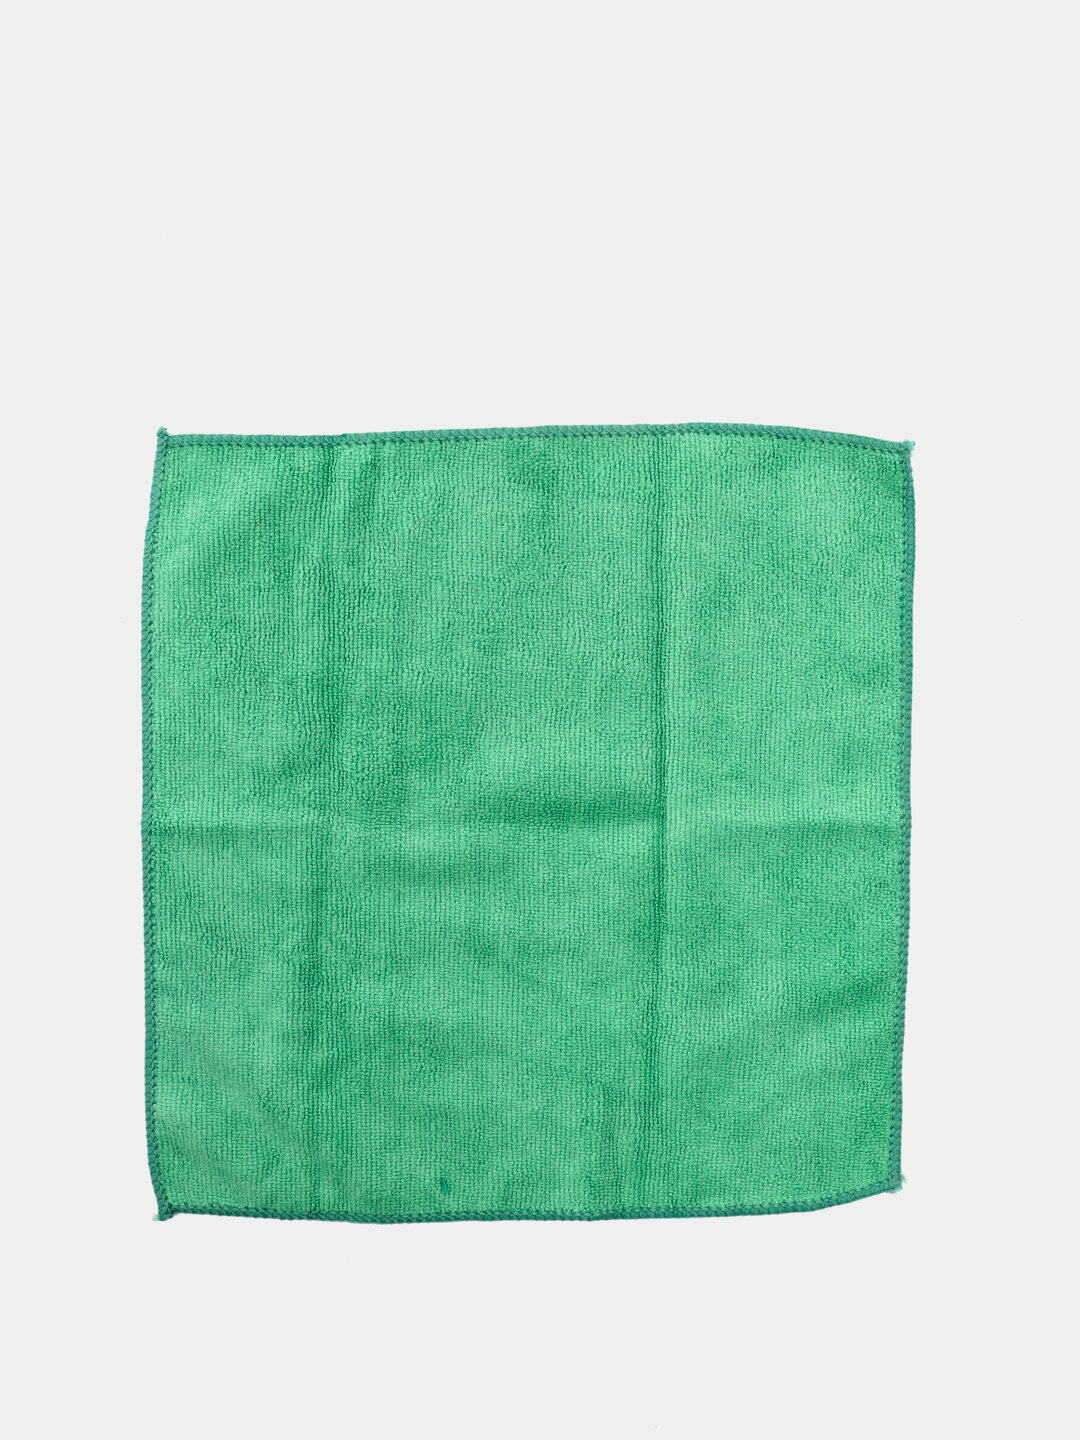 Салфетка хозяйственная ЭкоКоллекция из микрофибры зеленая, 30 x 30 см